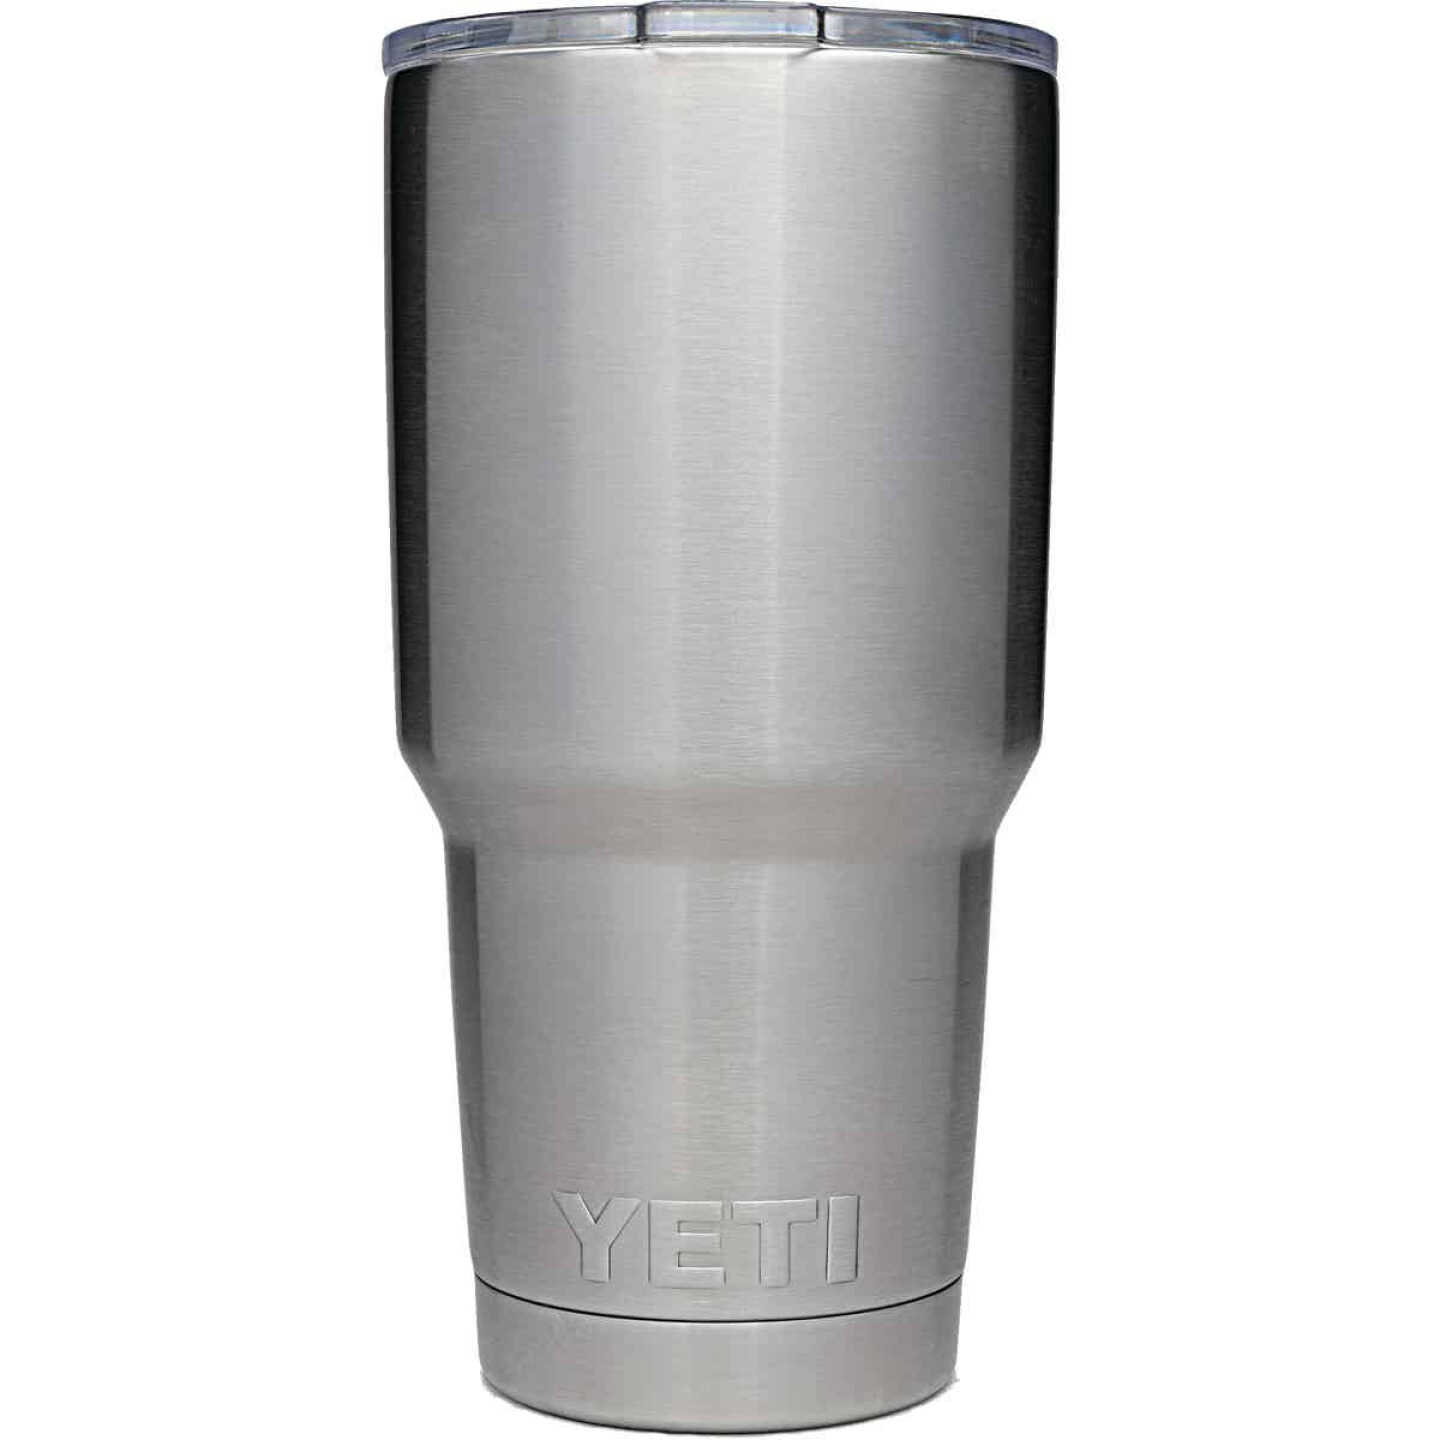 Yeti Rambler 30 oz. Stainless Steel Tumbler Travel Mug With Lid